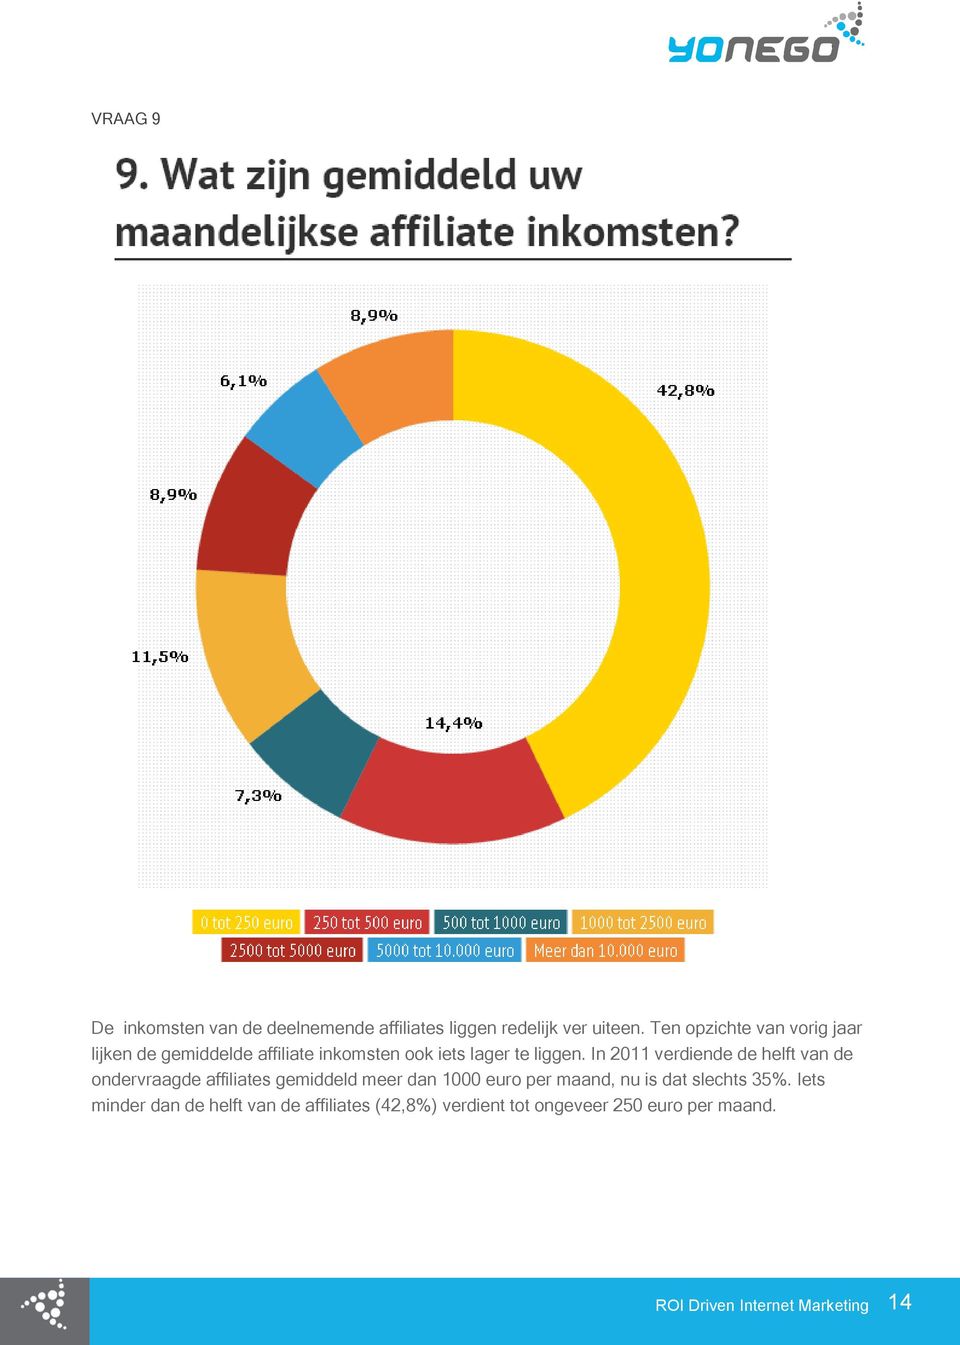 In 2011 verdiende de helft van de ondervraagde affiliates gemiddeld meer dan 1000 euro per maand, nu is